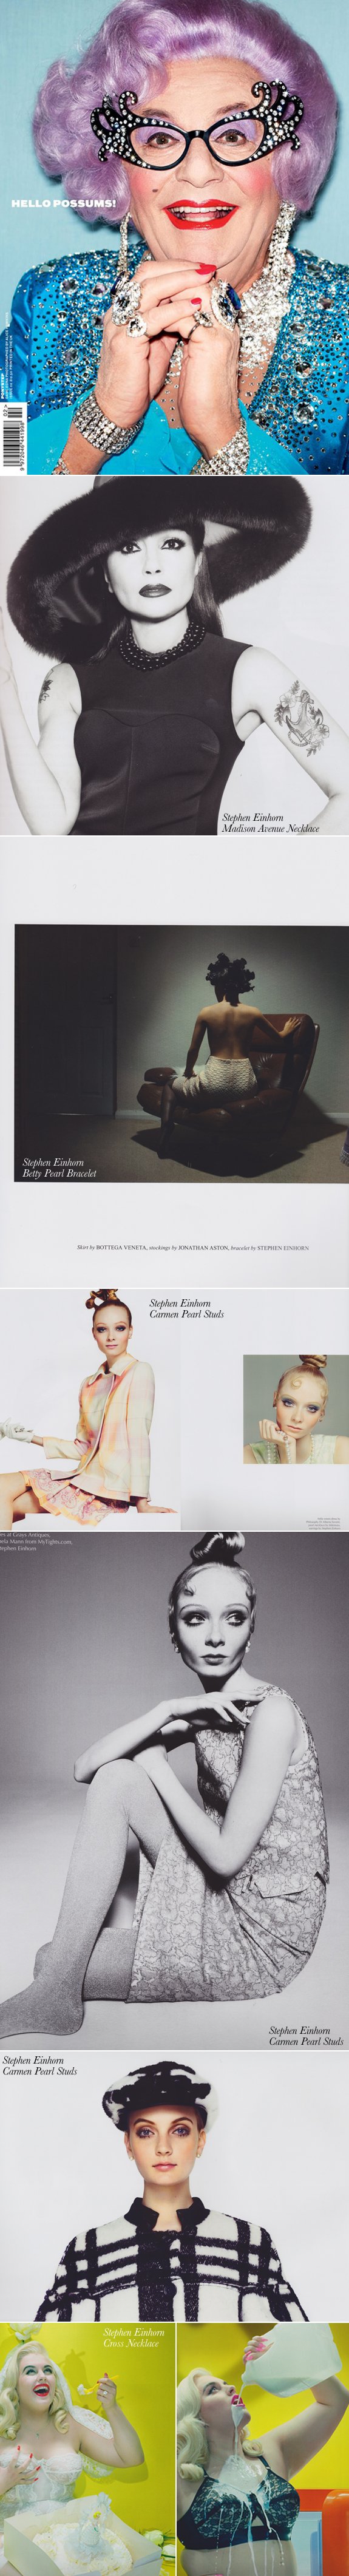 Stephen Einhorn's Women's Designer Jewellery in Ponystep Magazine - Stephen Einhorn London